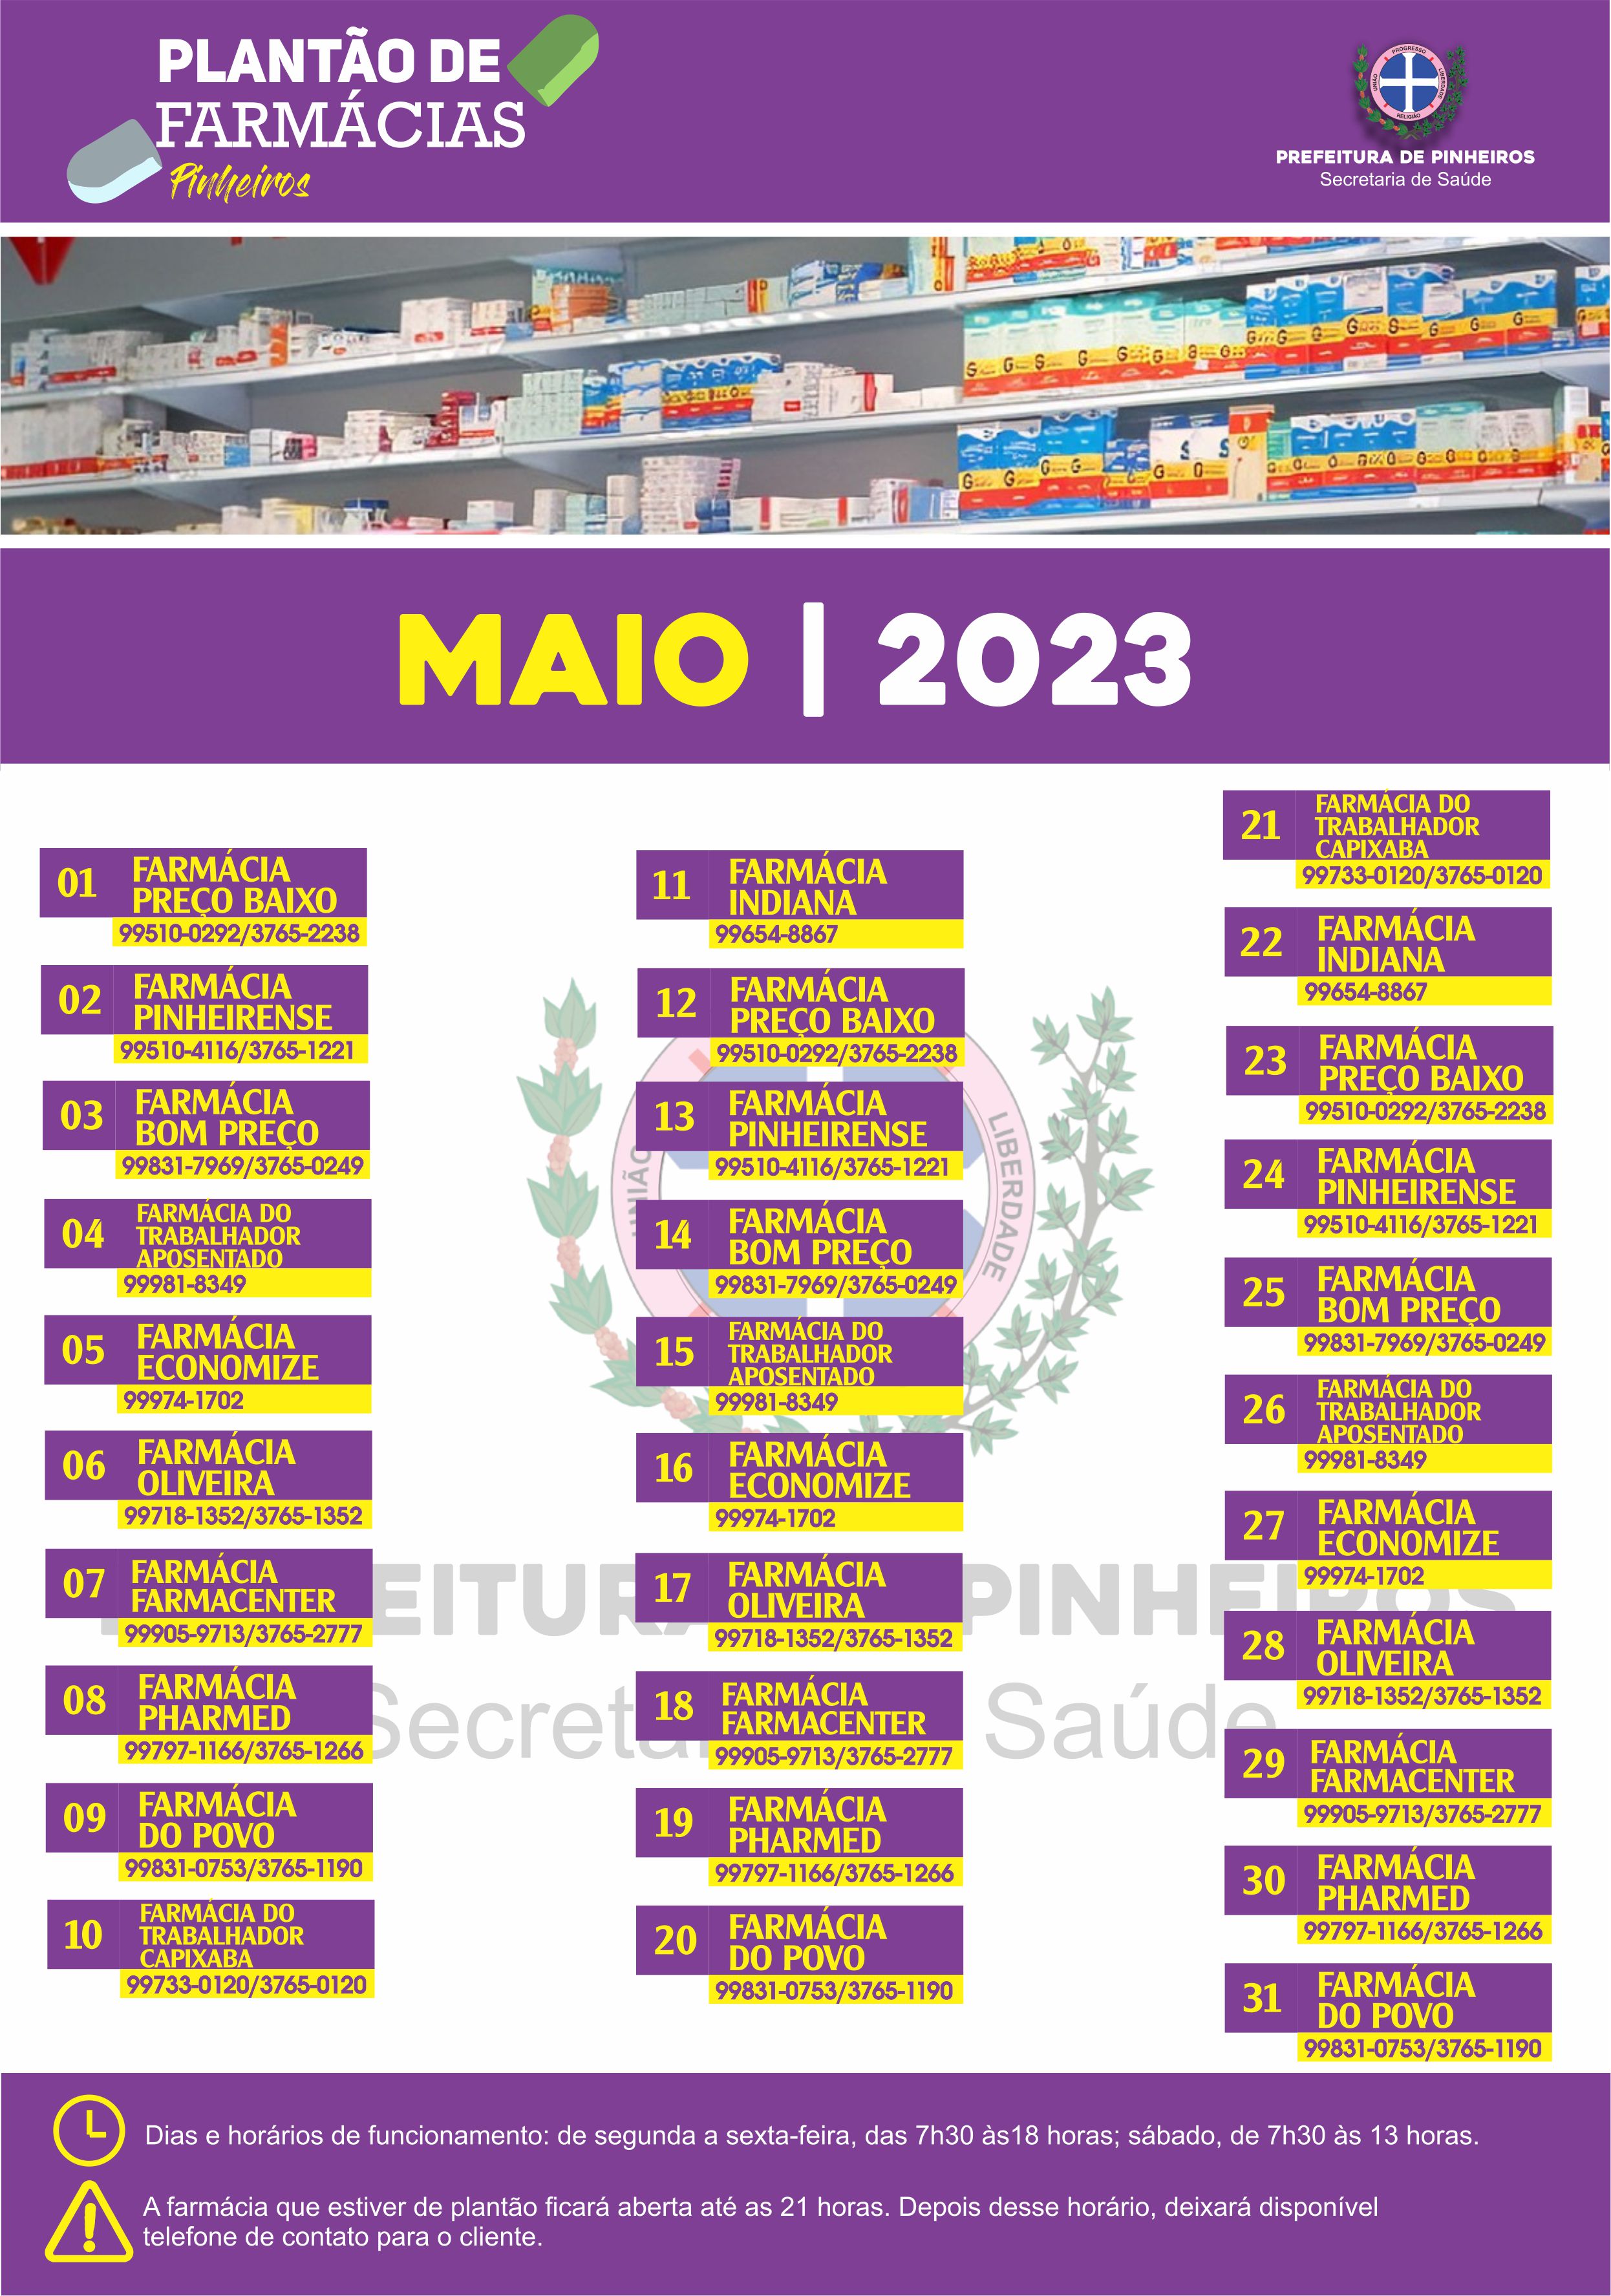 Calendário do Plantão de Farmácias do mês de maio